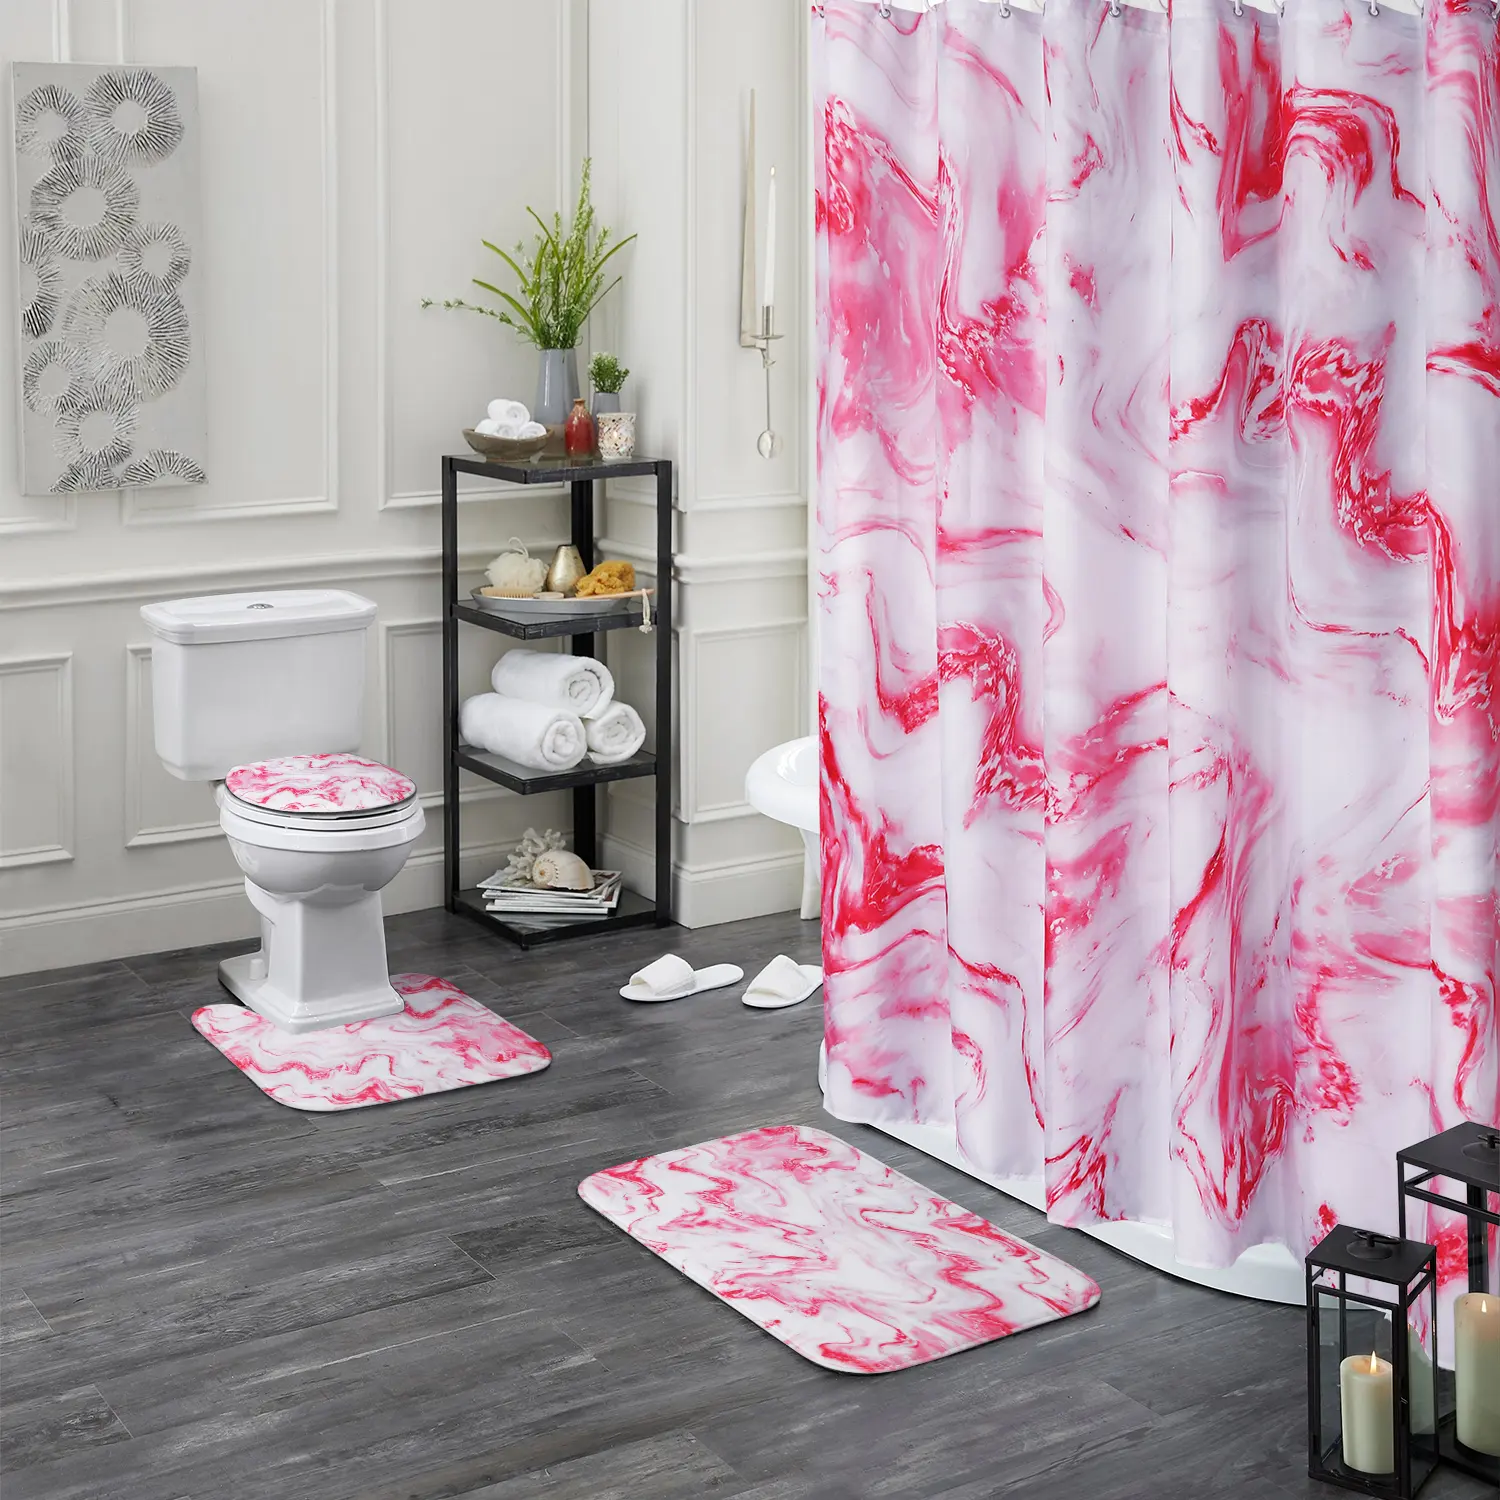 Alfombrilla de espuma de franela colorida a rayas de mármol nueva personalizada, Juego de 4 piezas con cortina de ducha para baño y hogar